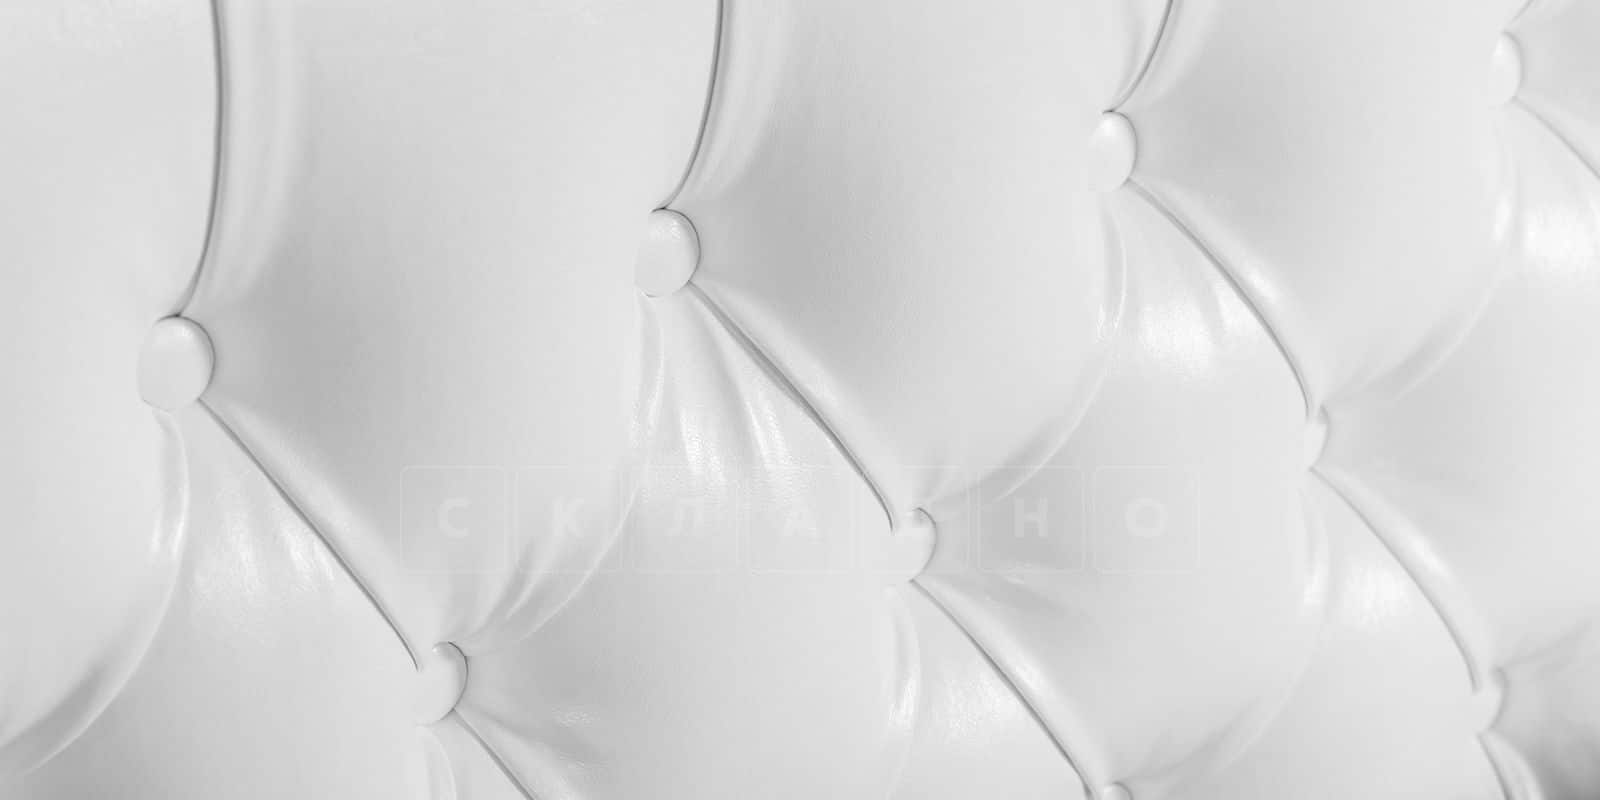 Мягкая кровать Малибу 160 см экокожа белого цвета вариант 1-2 фото 5 | интернет-магазин Складно